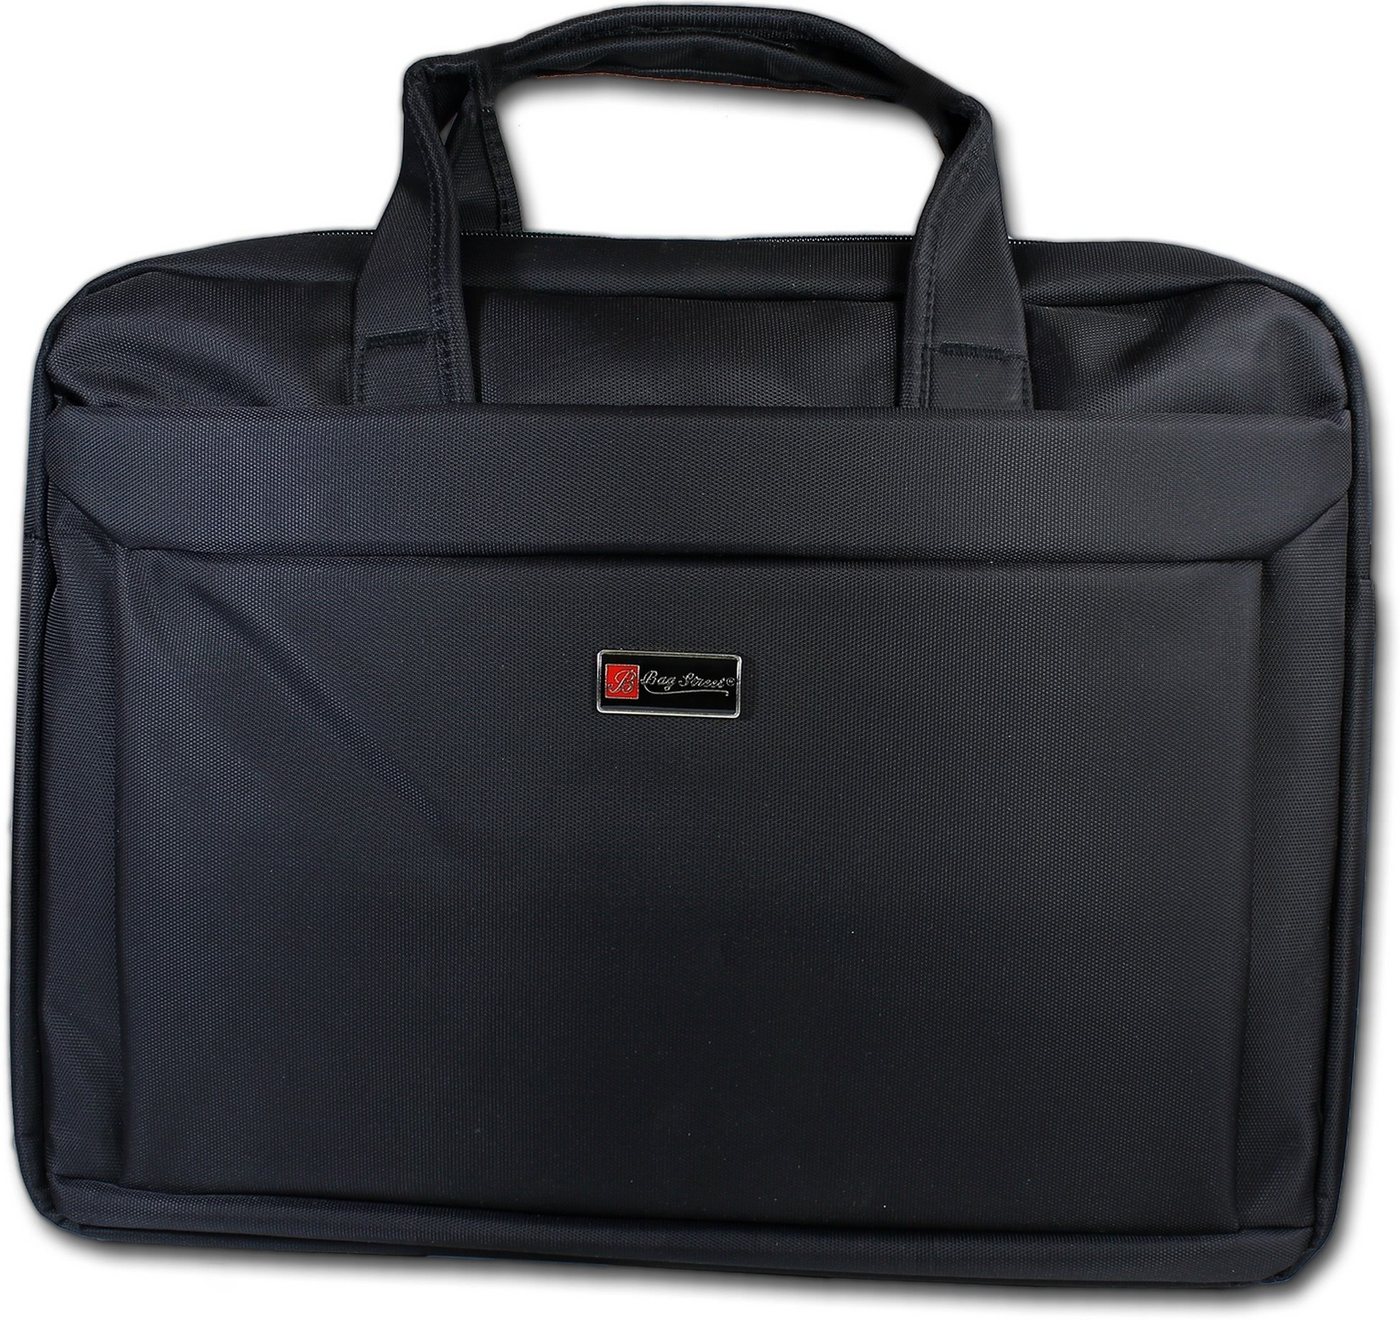 BAG STREET Laptoptasche Bag Street edle Businesstasche Damen, Herren, Damen Tasche in schwarz von BAG STREET